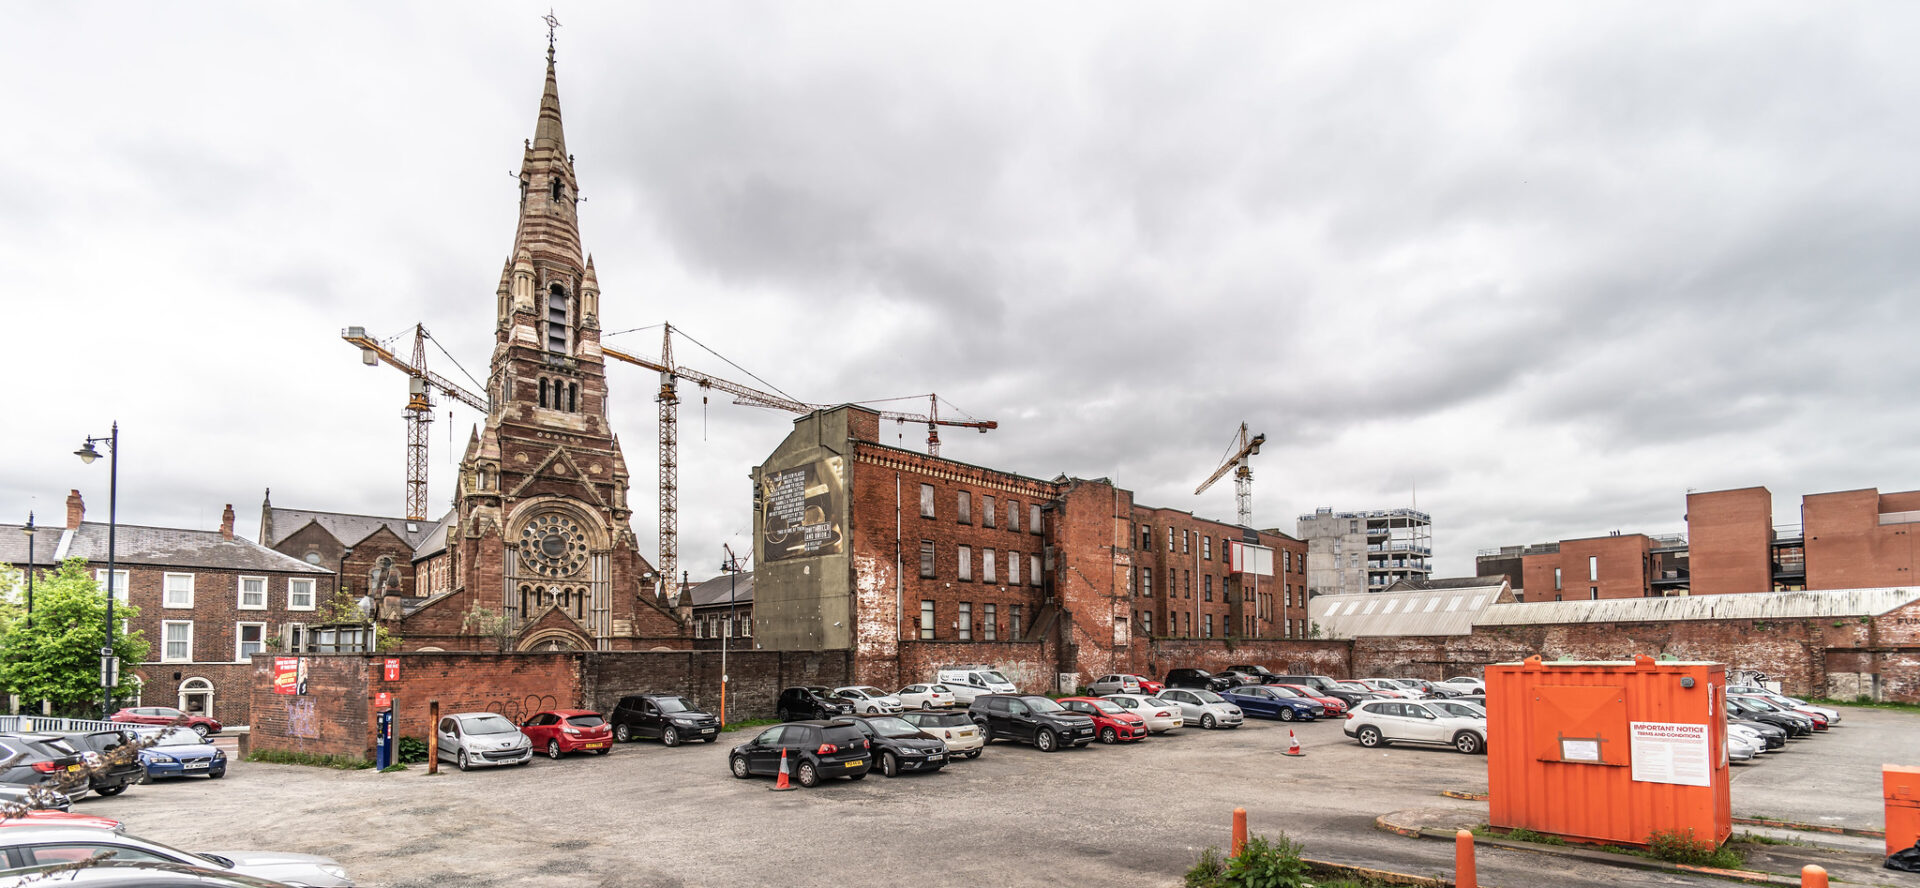 Les catholiques sont devenus la confession majoritaire en Irlande du Nord | photo: église catholique St-Patrick à Belfast © William Murphy/Flickr/CC BY-SA 2.0